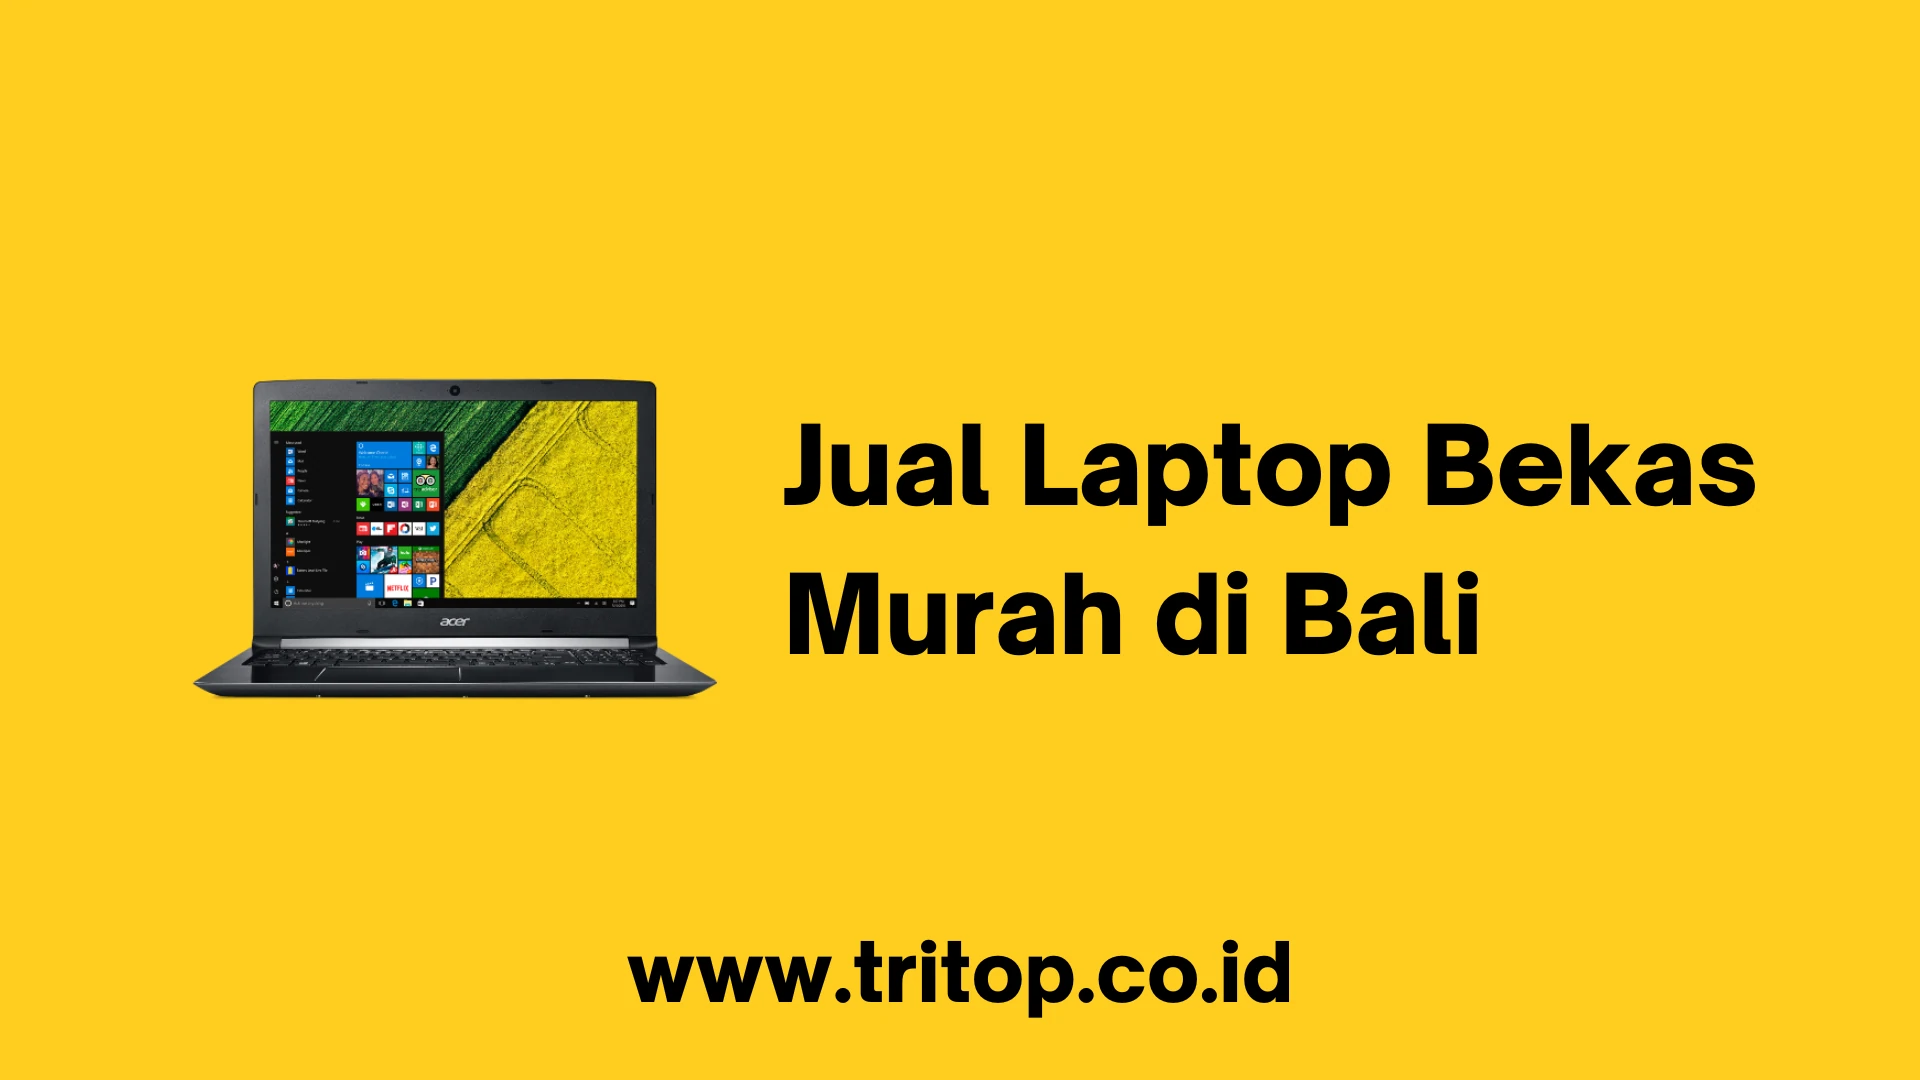 Jual Laptop Bekas Murah di Bali